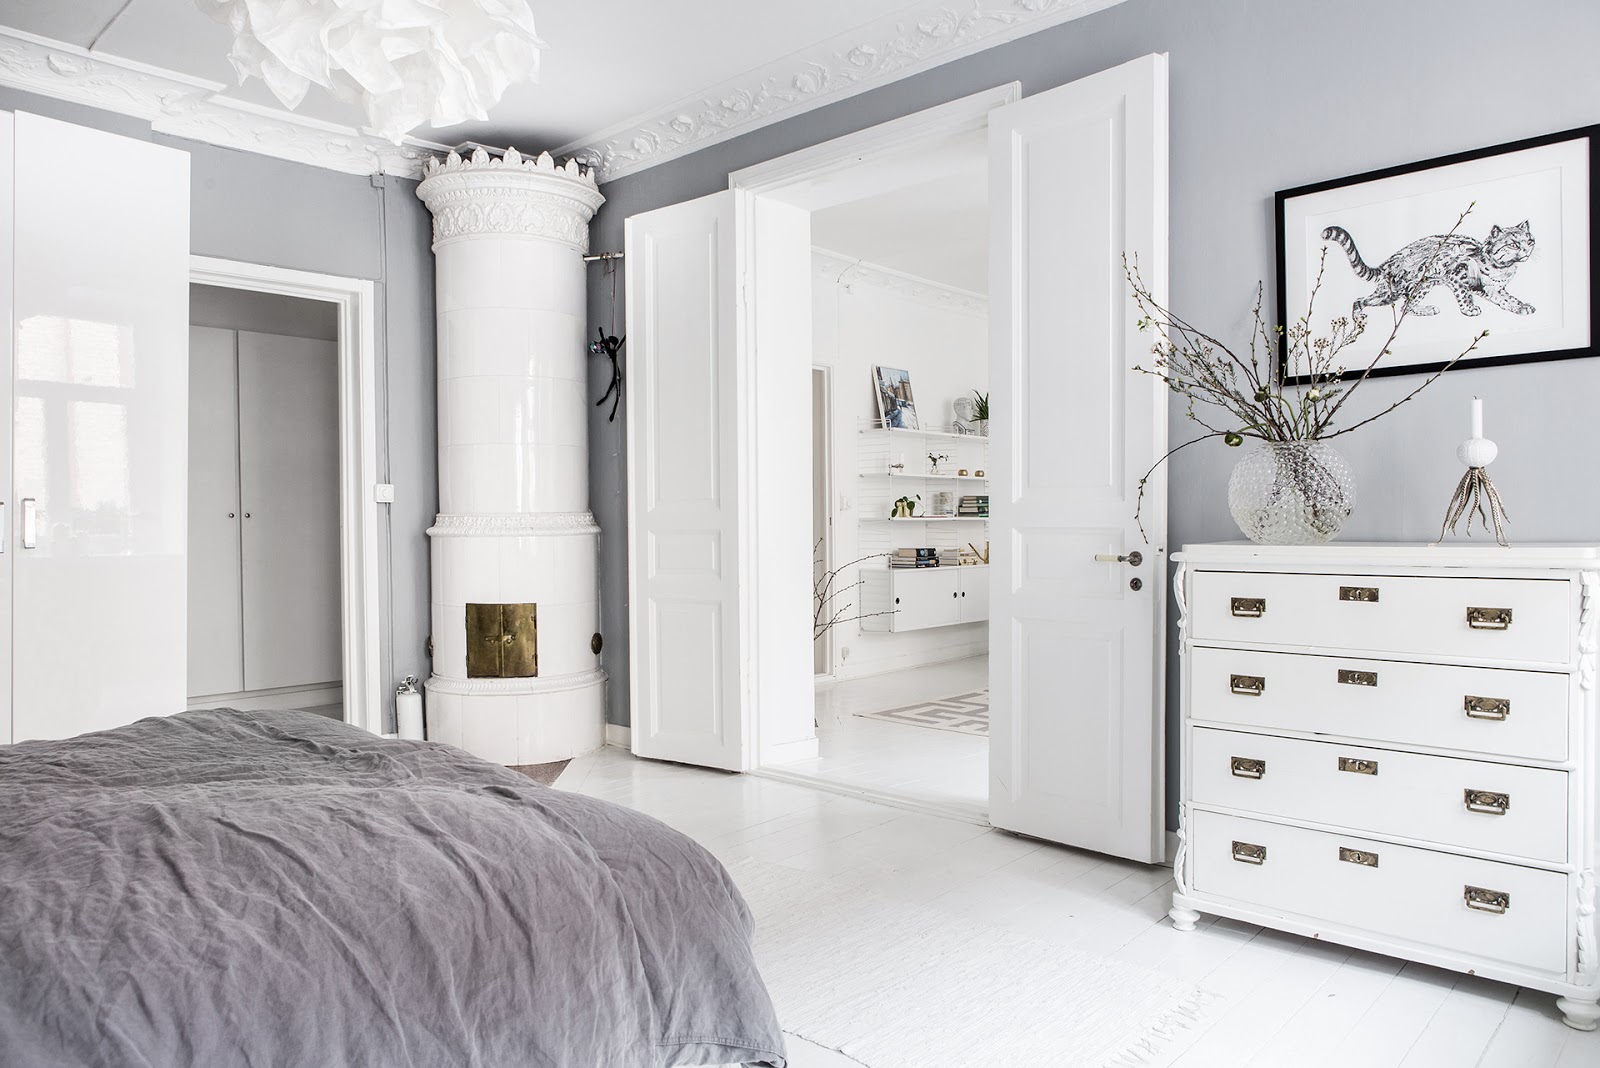 dormitorio, estilo nordico, cajonera, blanco, decoracion nordica, cama, sabanas gris, interiorismo, alquimia deco